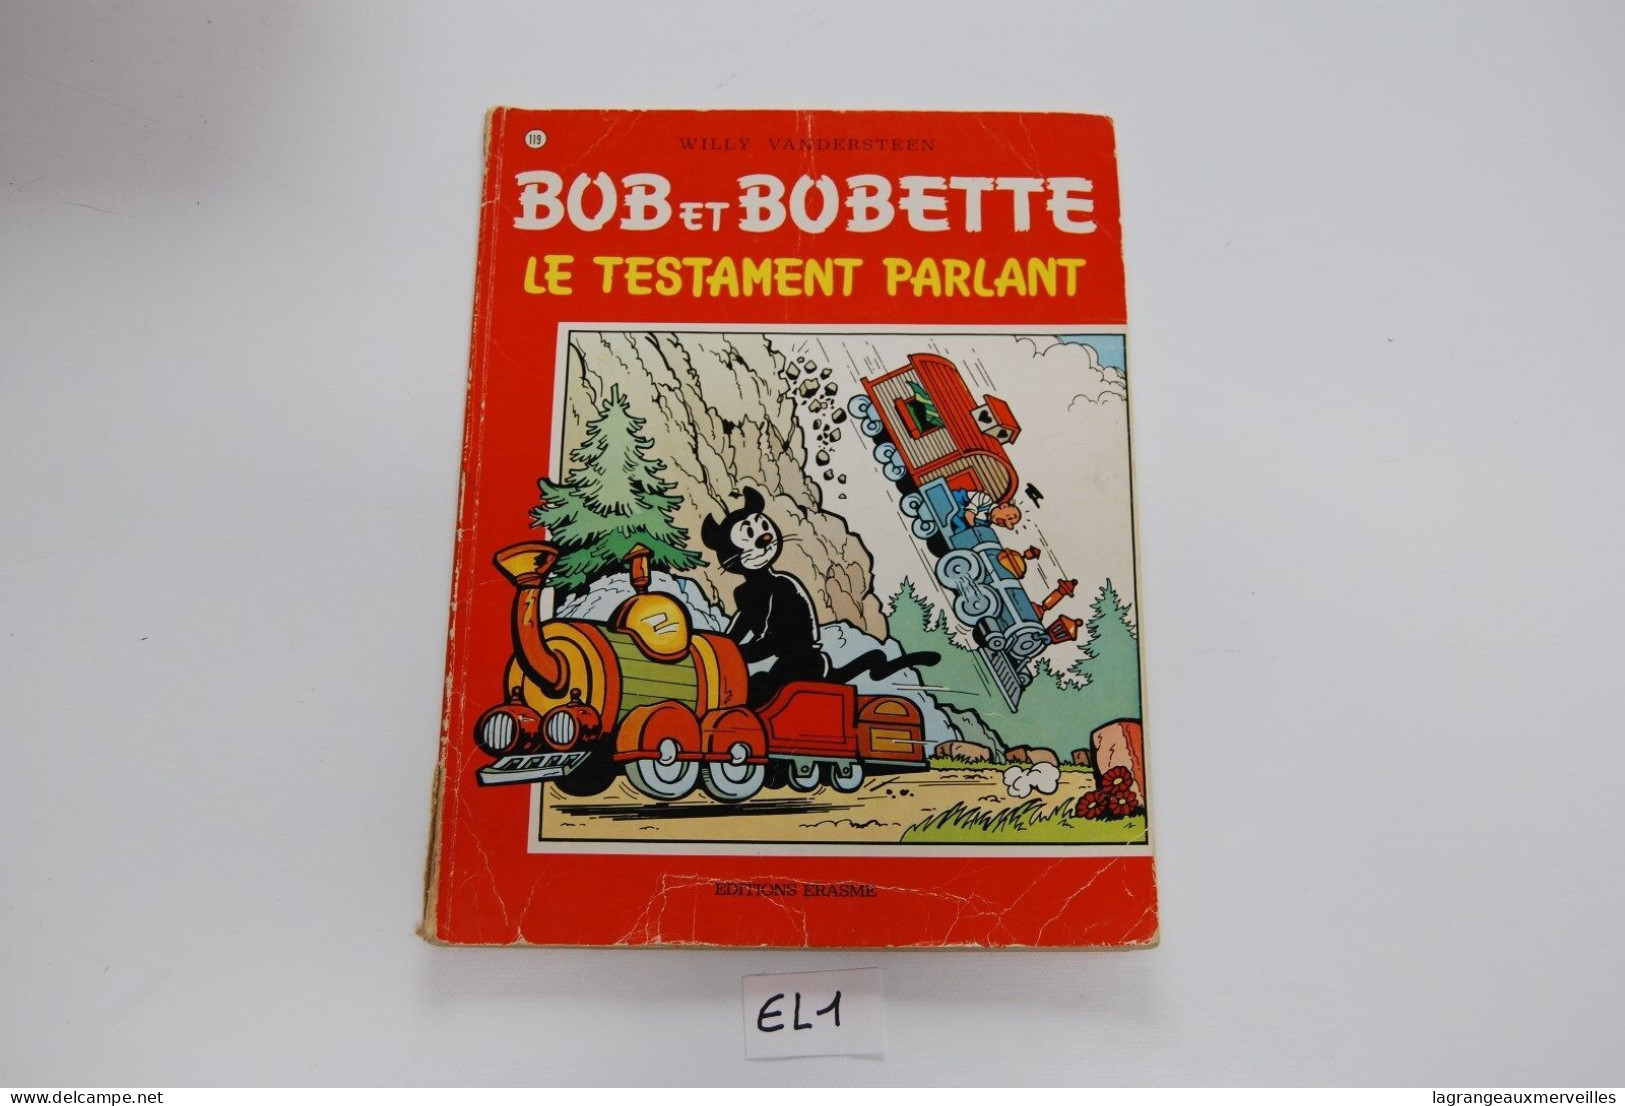 E1 BD - Bob et Bobette - 4 titres les rayons zouin cheval d'or la dame de carrea